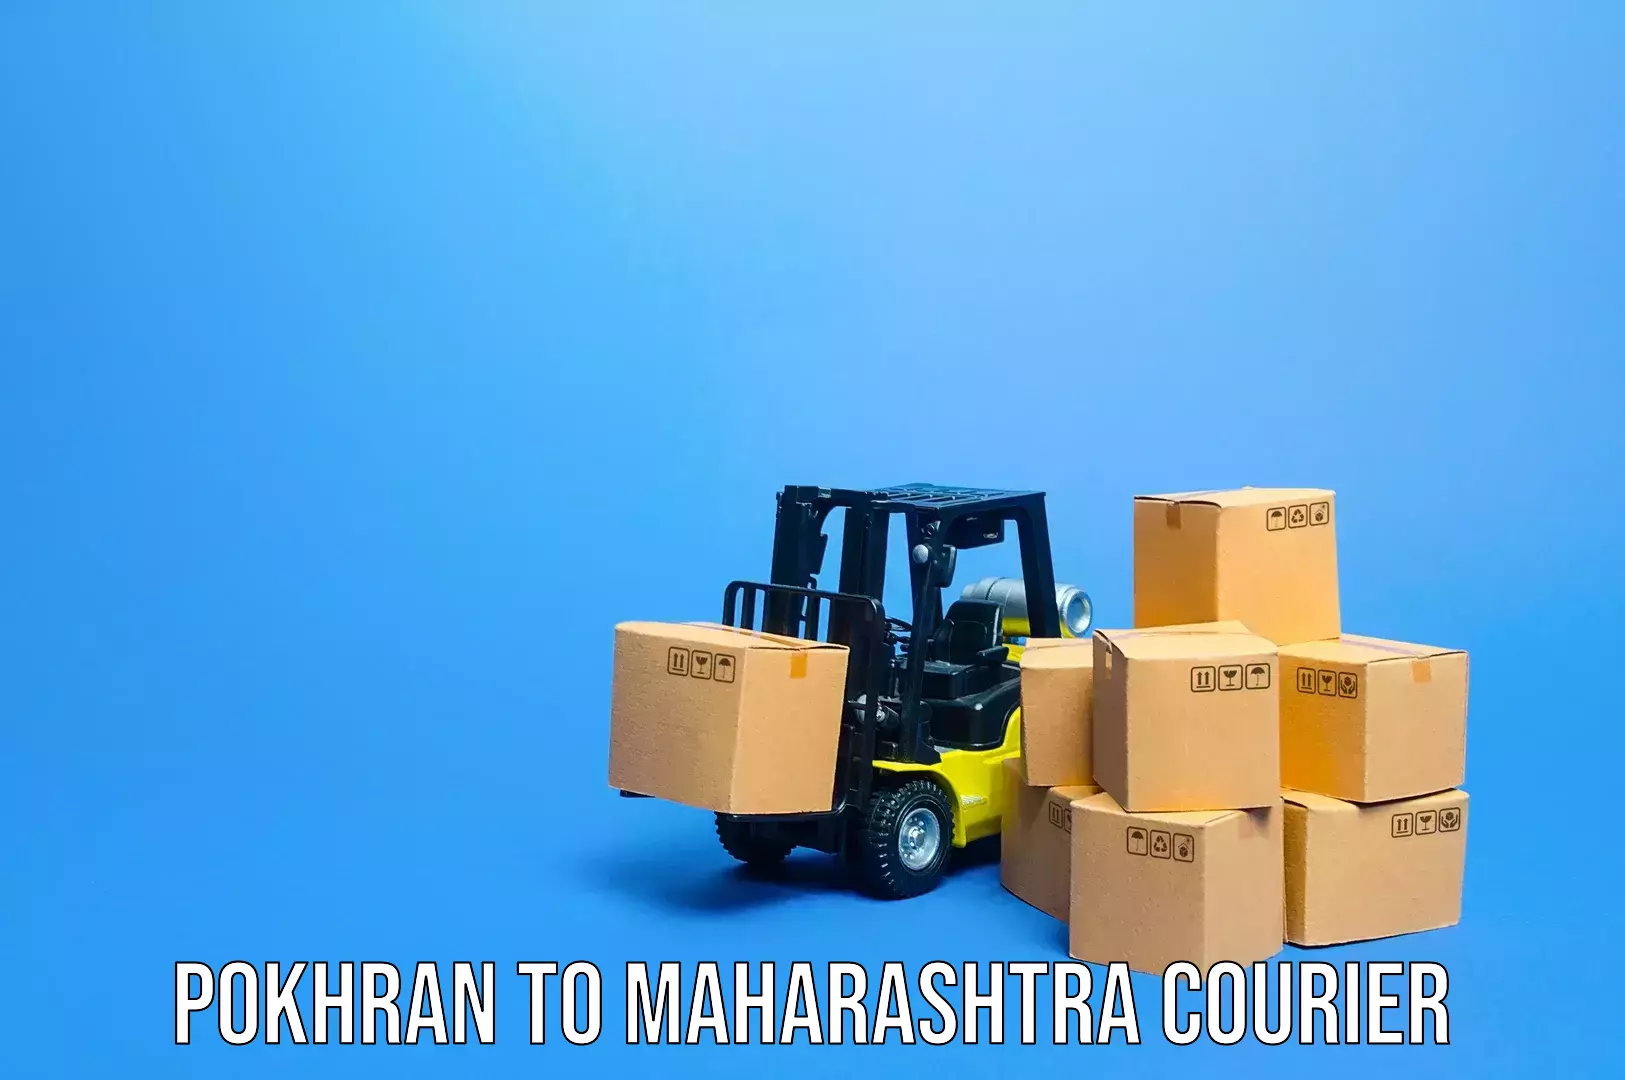 Luggage delivery providers Pokhran to Maharashtra